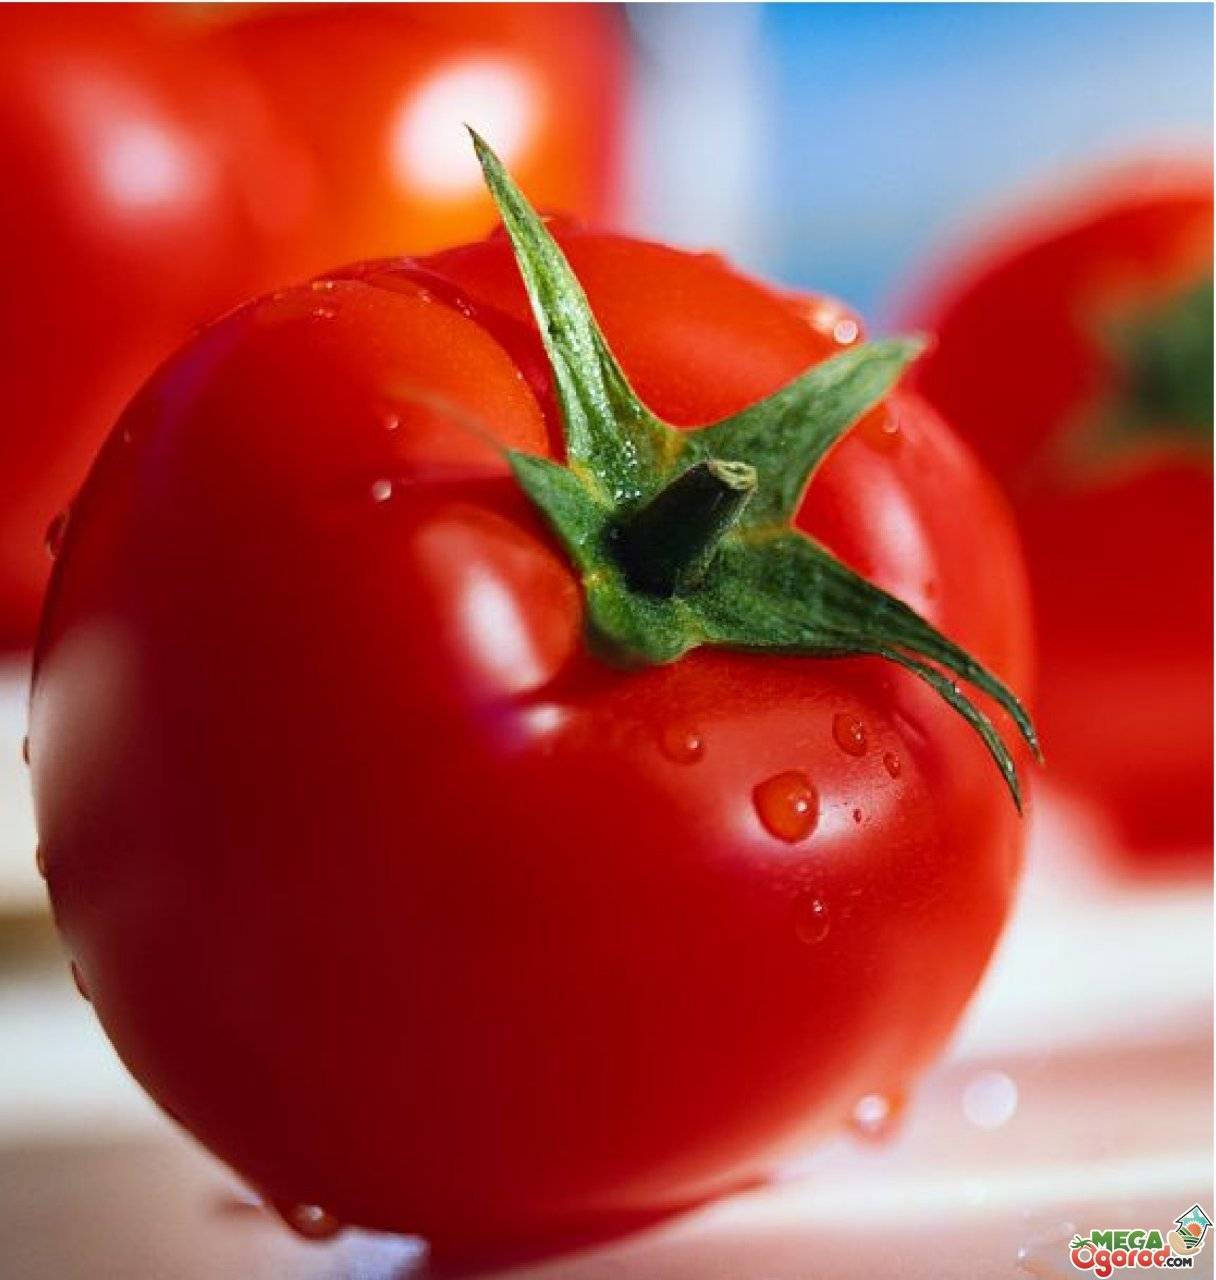 Томат царь петр. щедрые урожаи красивых и очень вкусных томатов — царь пётр: описание и характеристики сорта